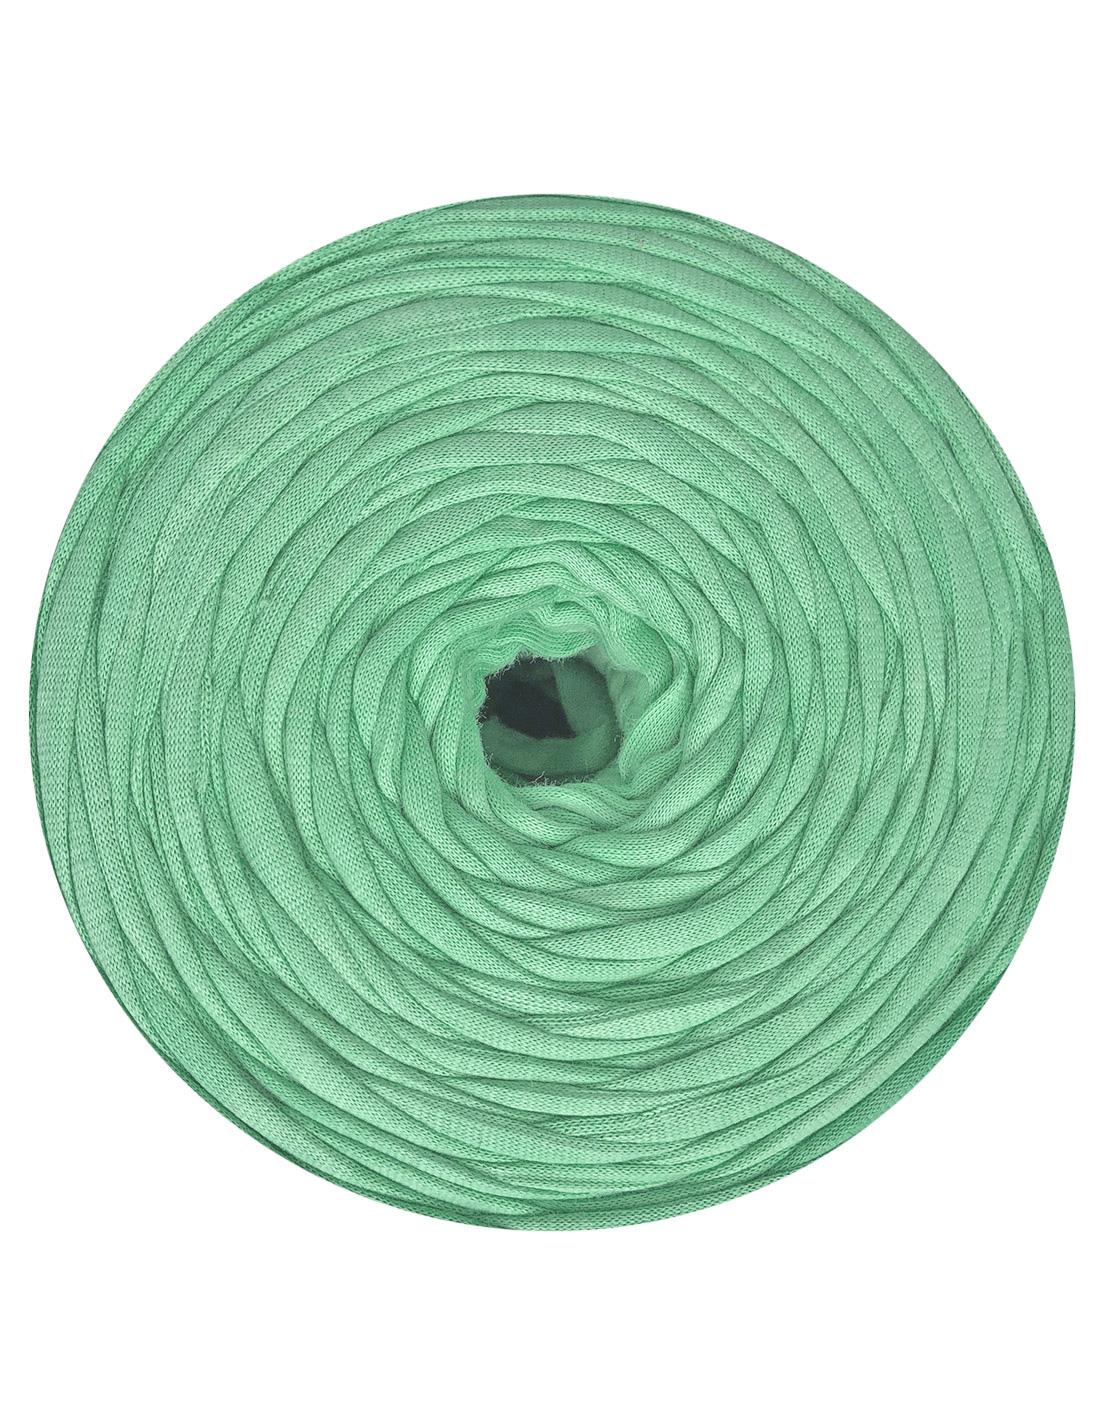 Seafoam green t-shirt yarn by Hoooked Zpagetti (100-120m)